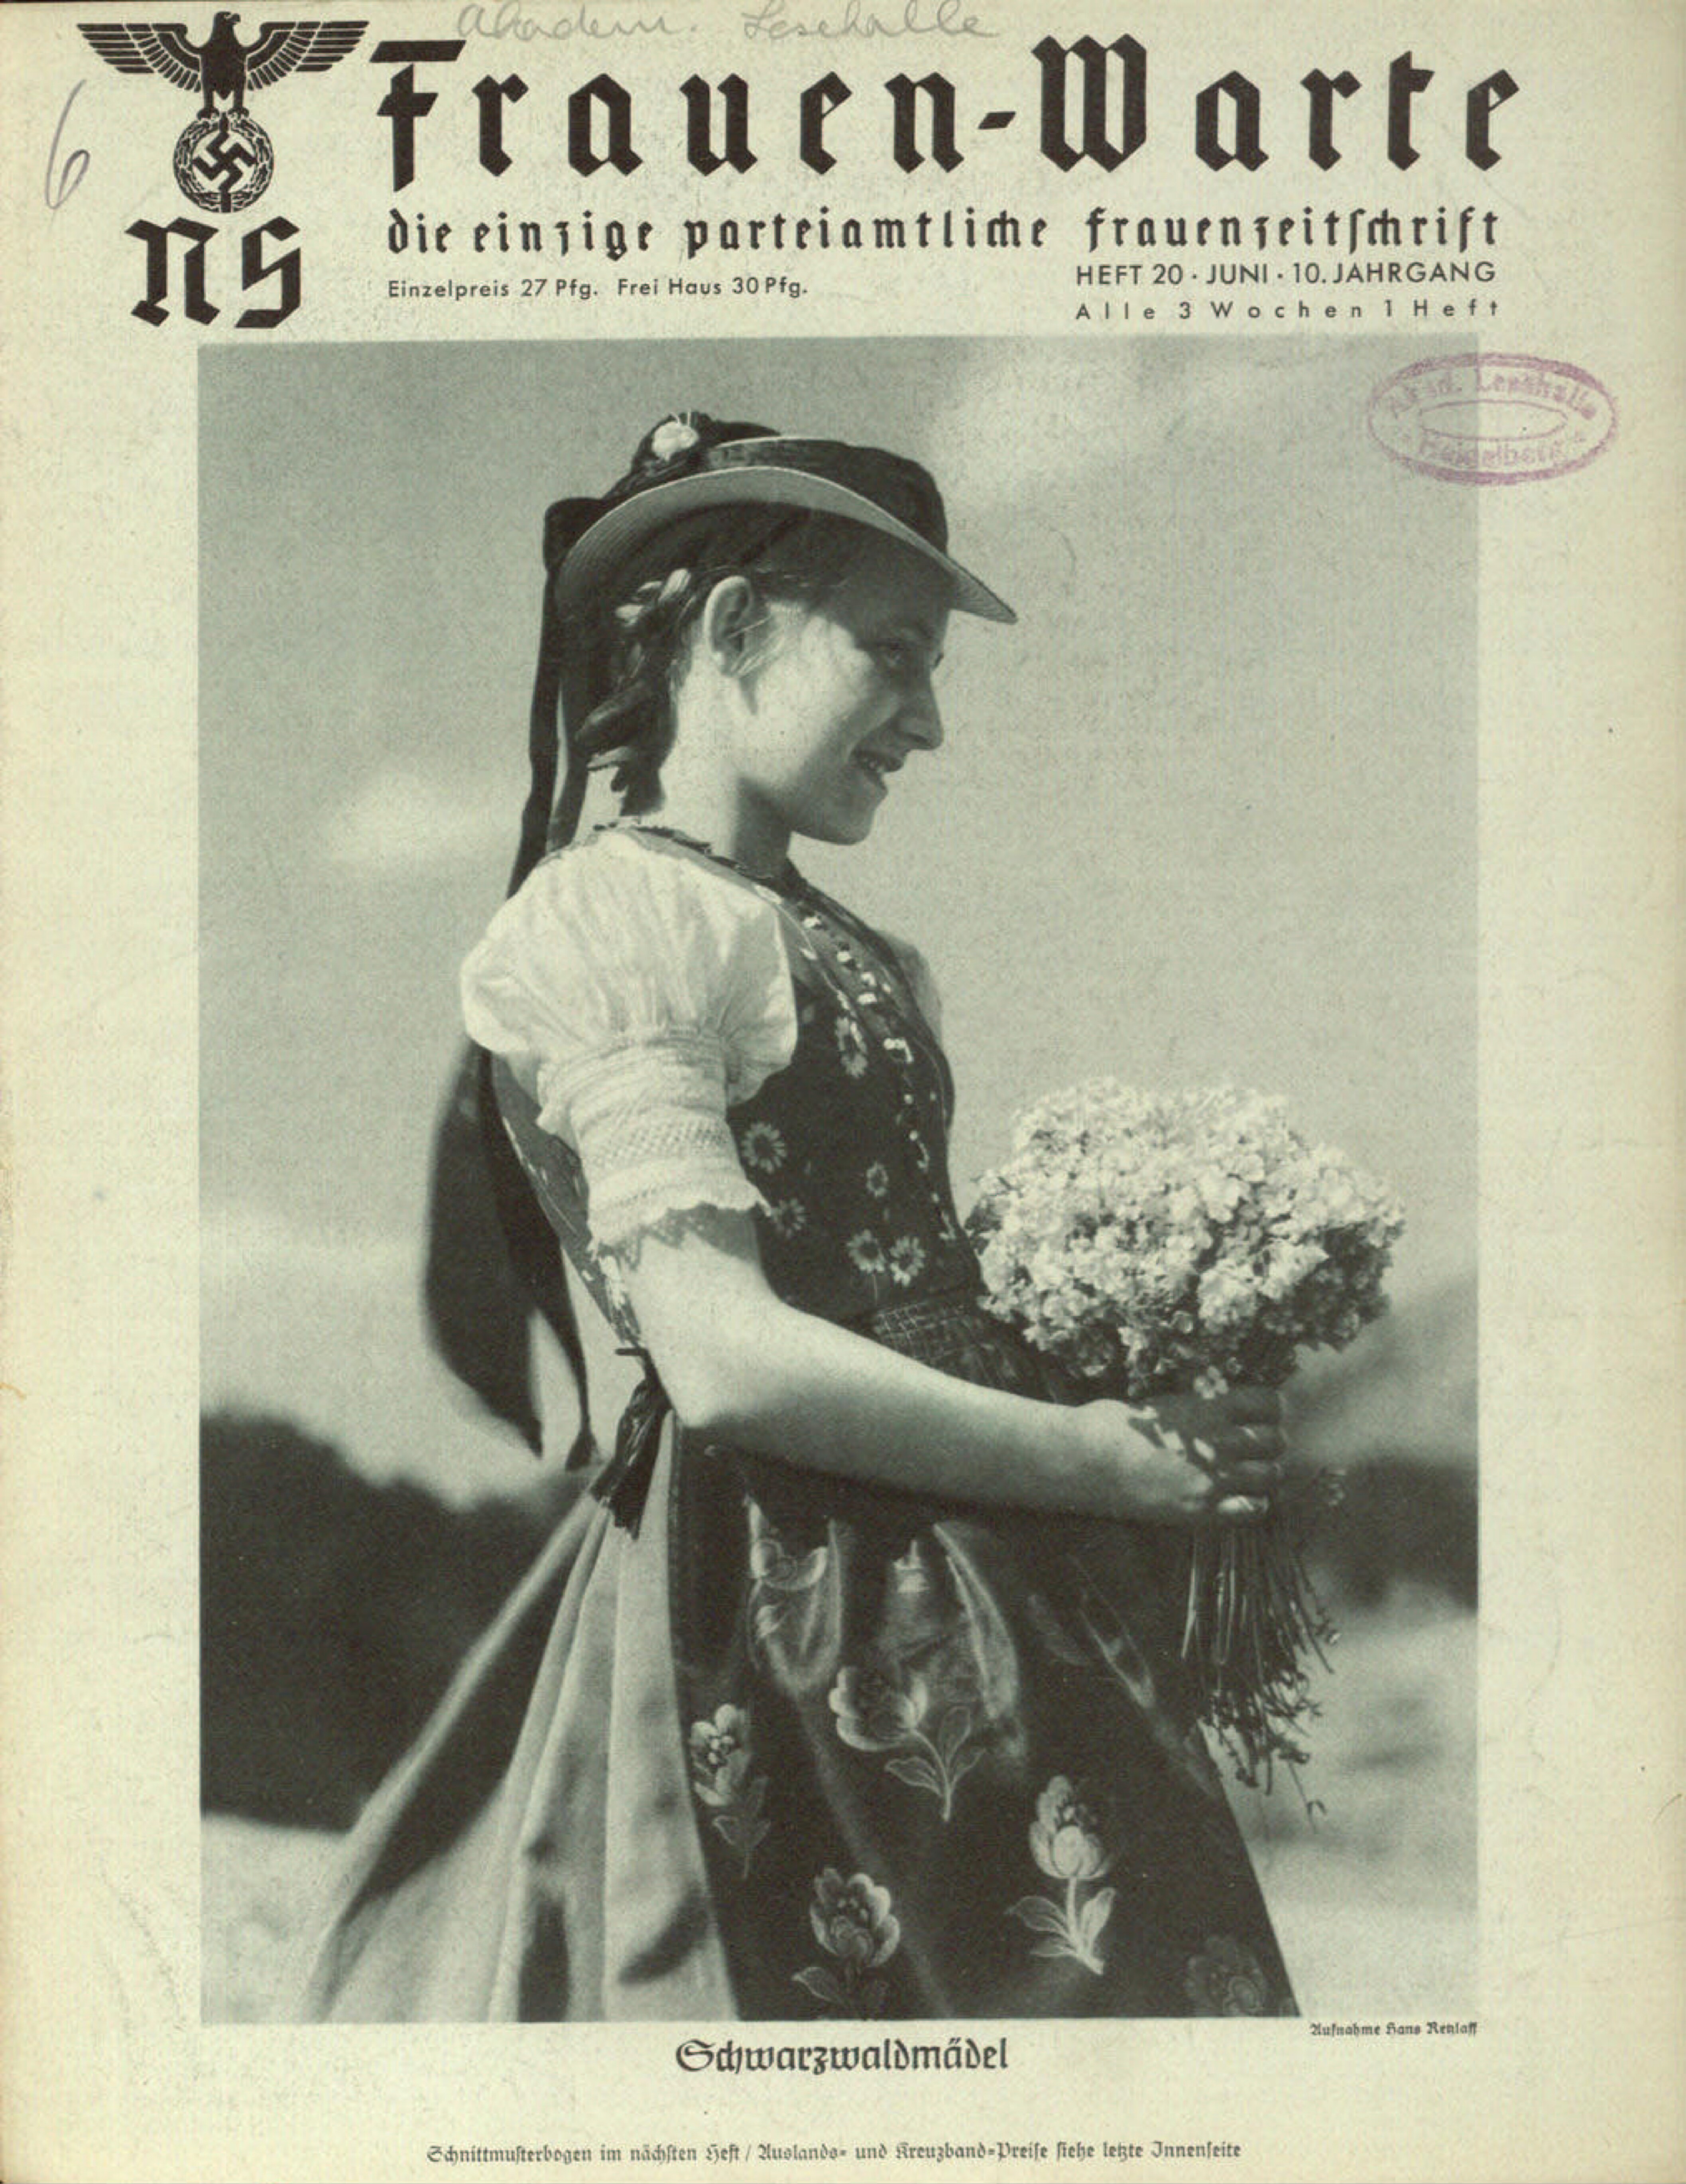 Frauen-Warte 10. Jahrgang Heft 20 (1942, 20 S., Scan, Fraktur)